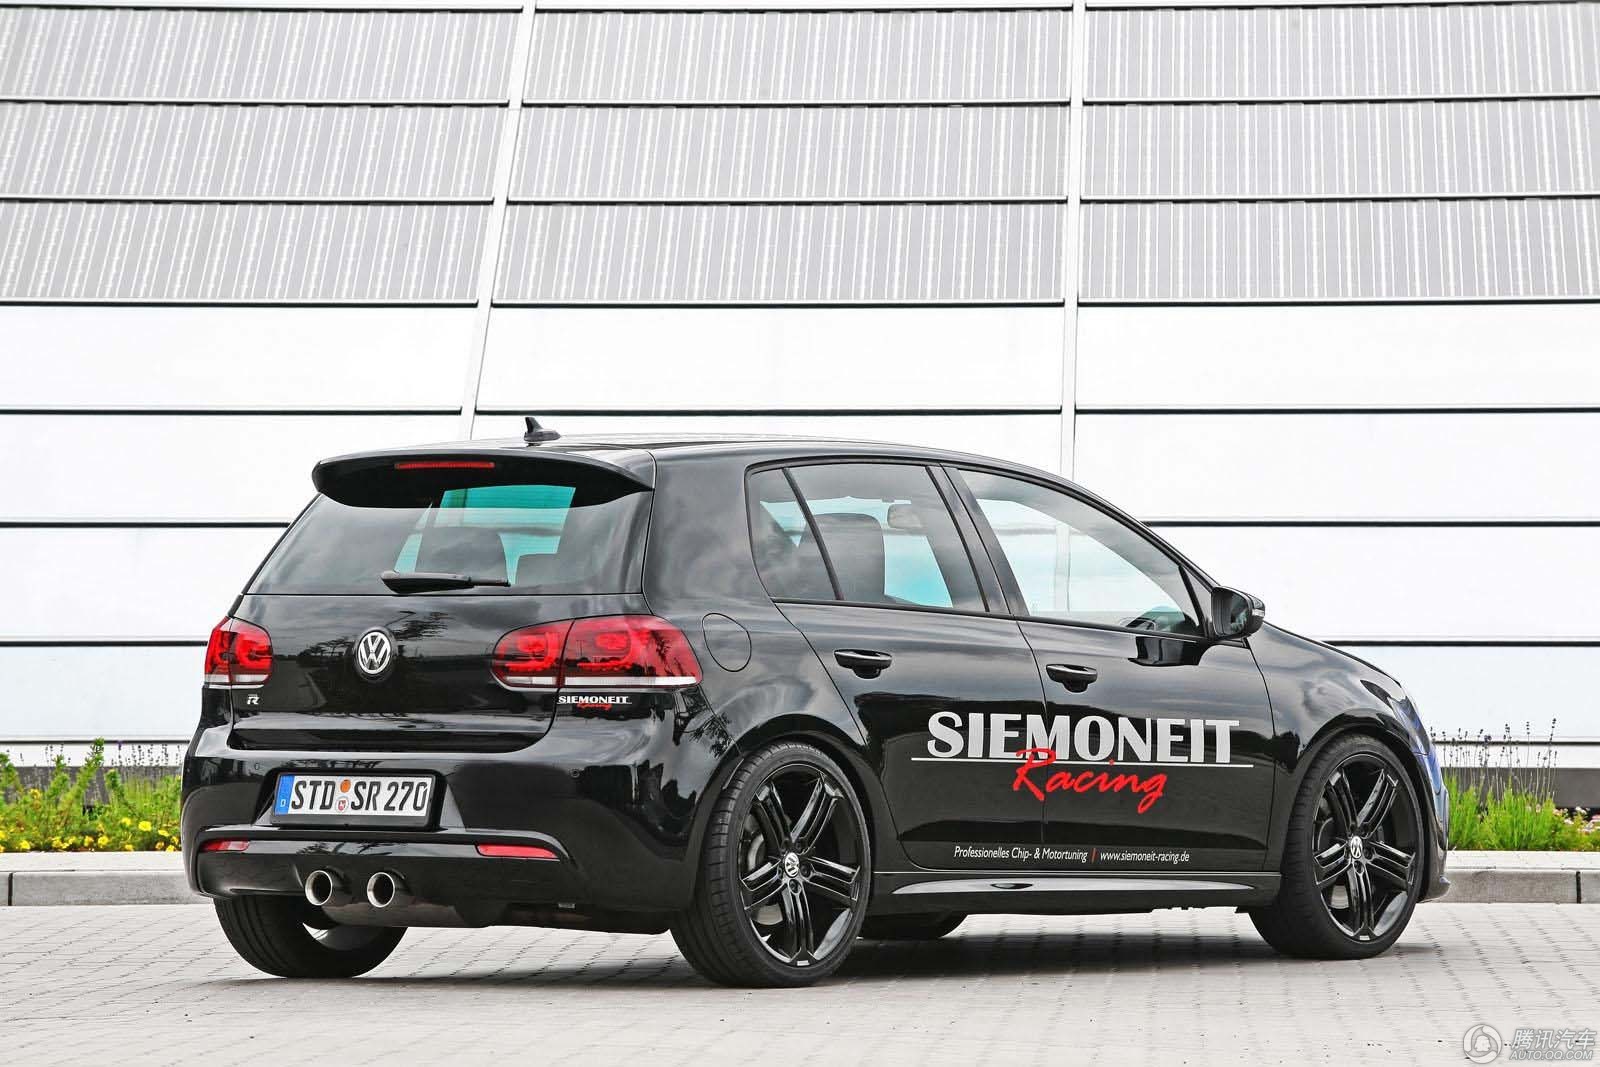 Siemoneit Racing发布530马力高尔夫R 诠释性能小钢炮295 / 作者:9527 / 帖子ID:1314